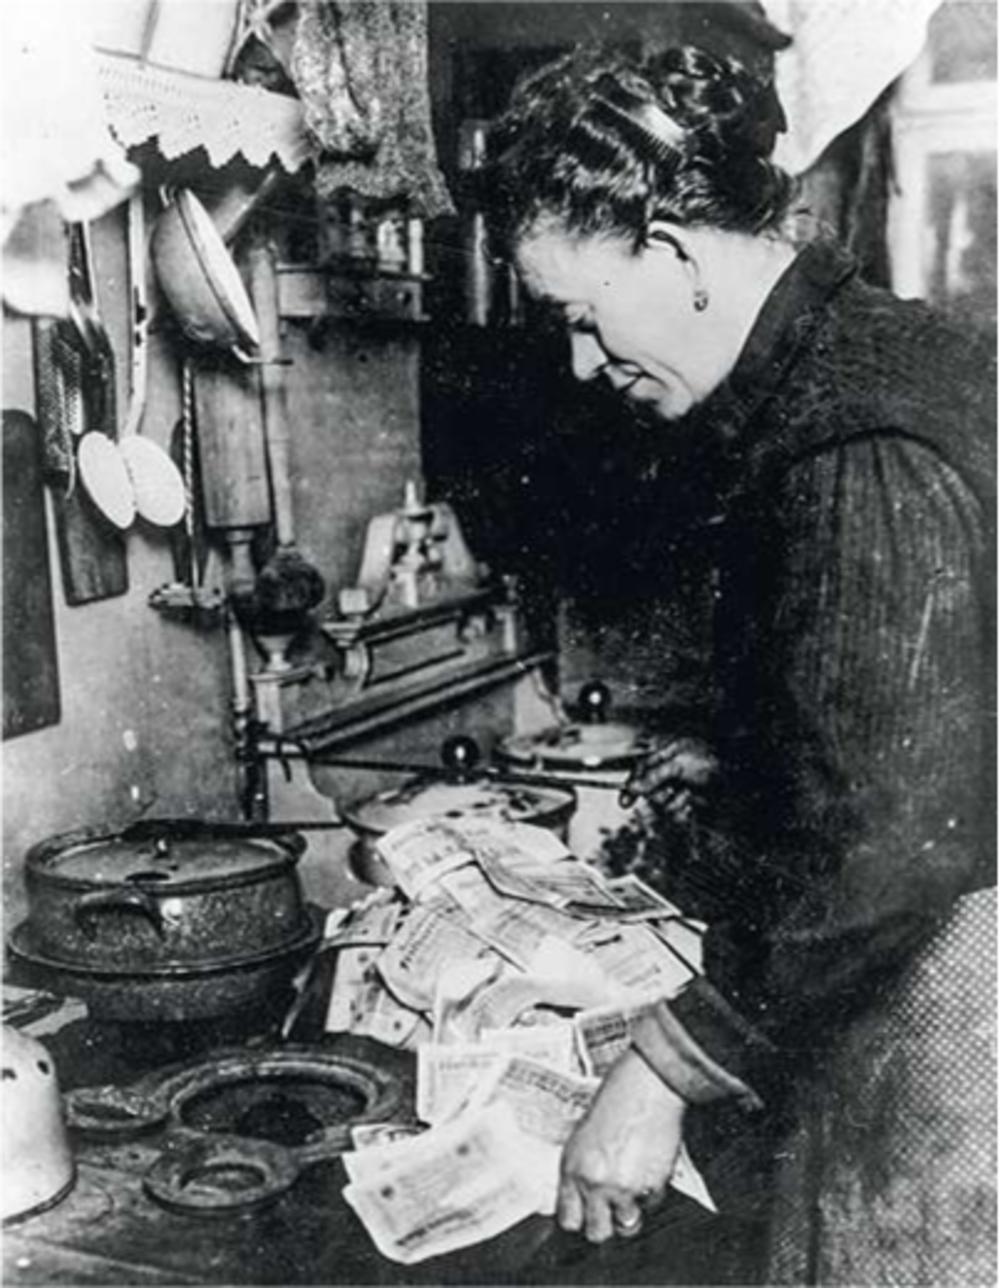 Berlijn, jaren 1920: deze vrouw stookt met Duitse marken omdat dit goedkoper is dan met het geld brandstof aan te schaffen. Een verarmde middenklasse is het beste recept voor radicialisering.